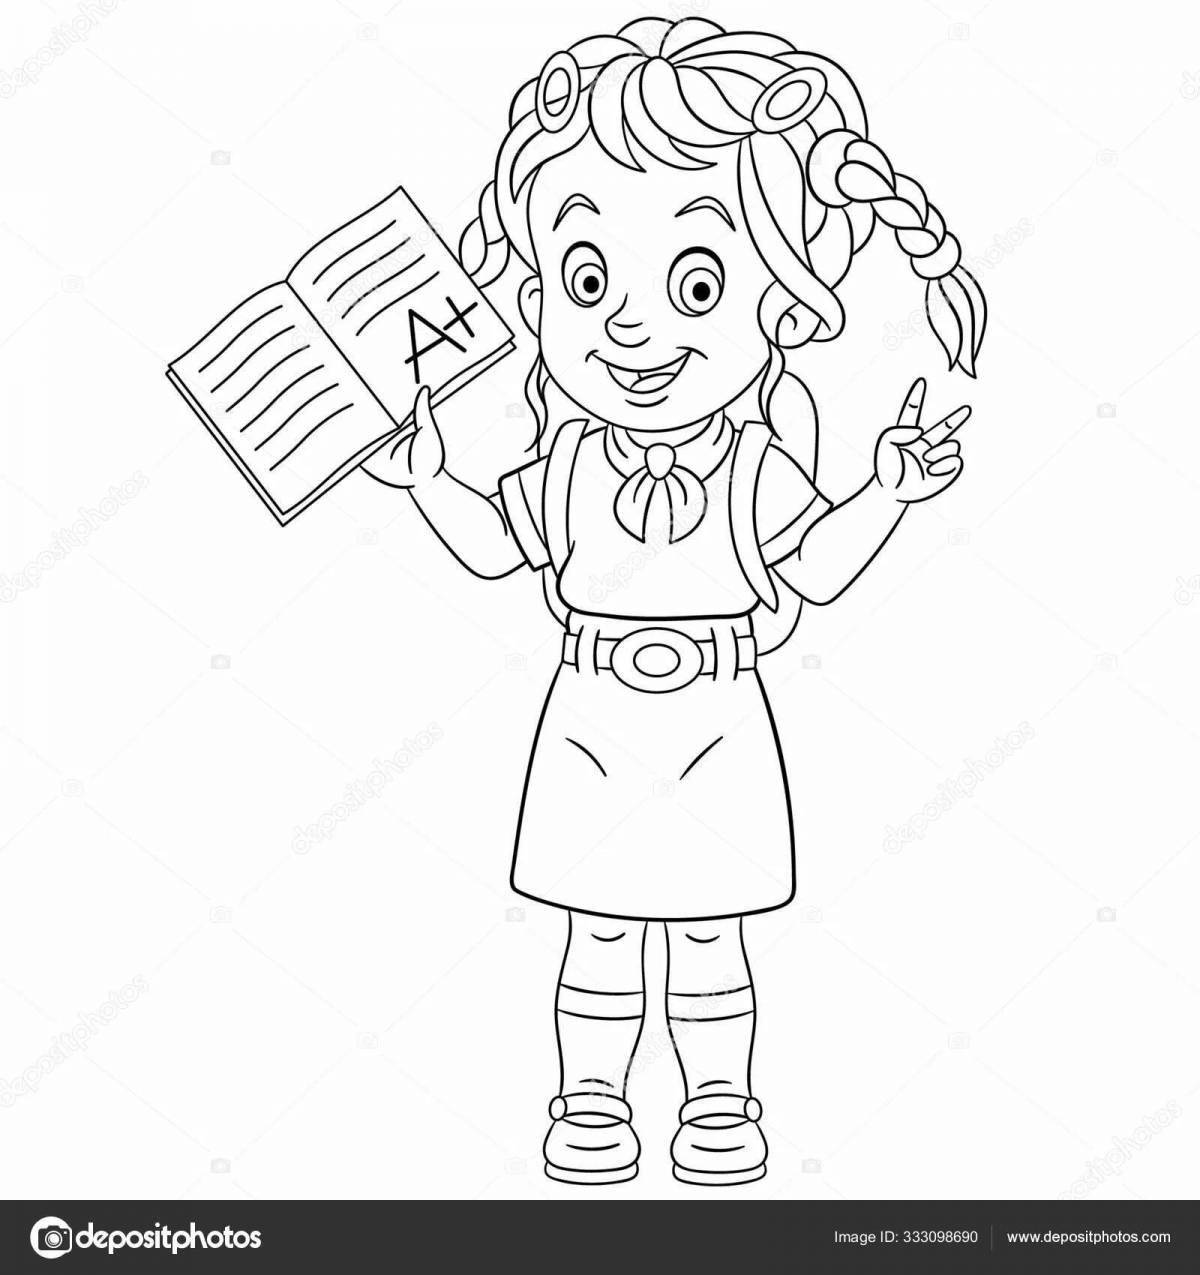 Coloring page energetic schoolgirl